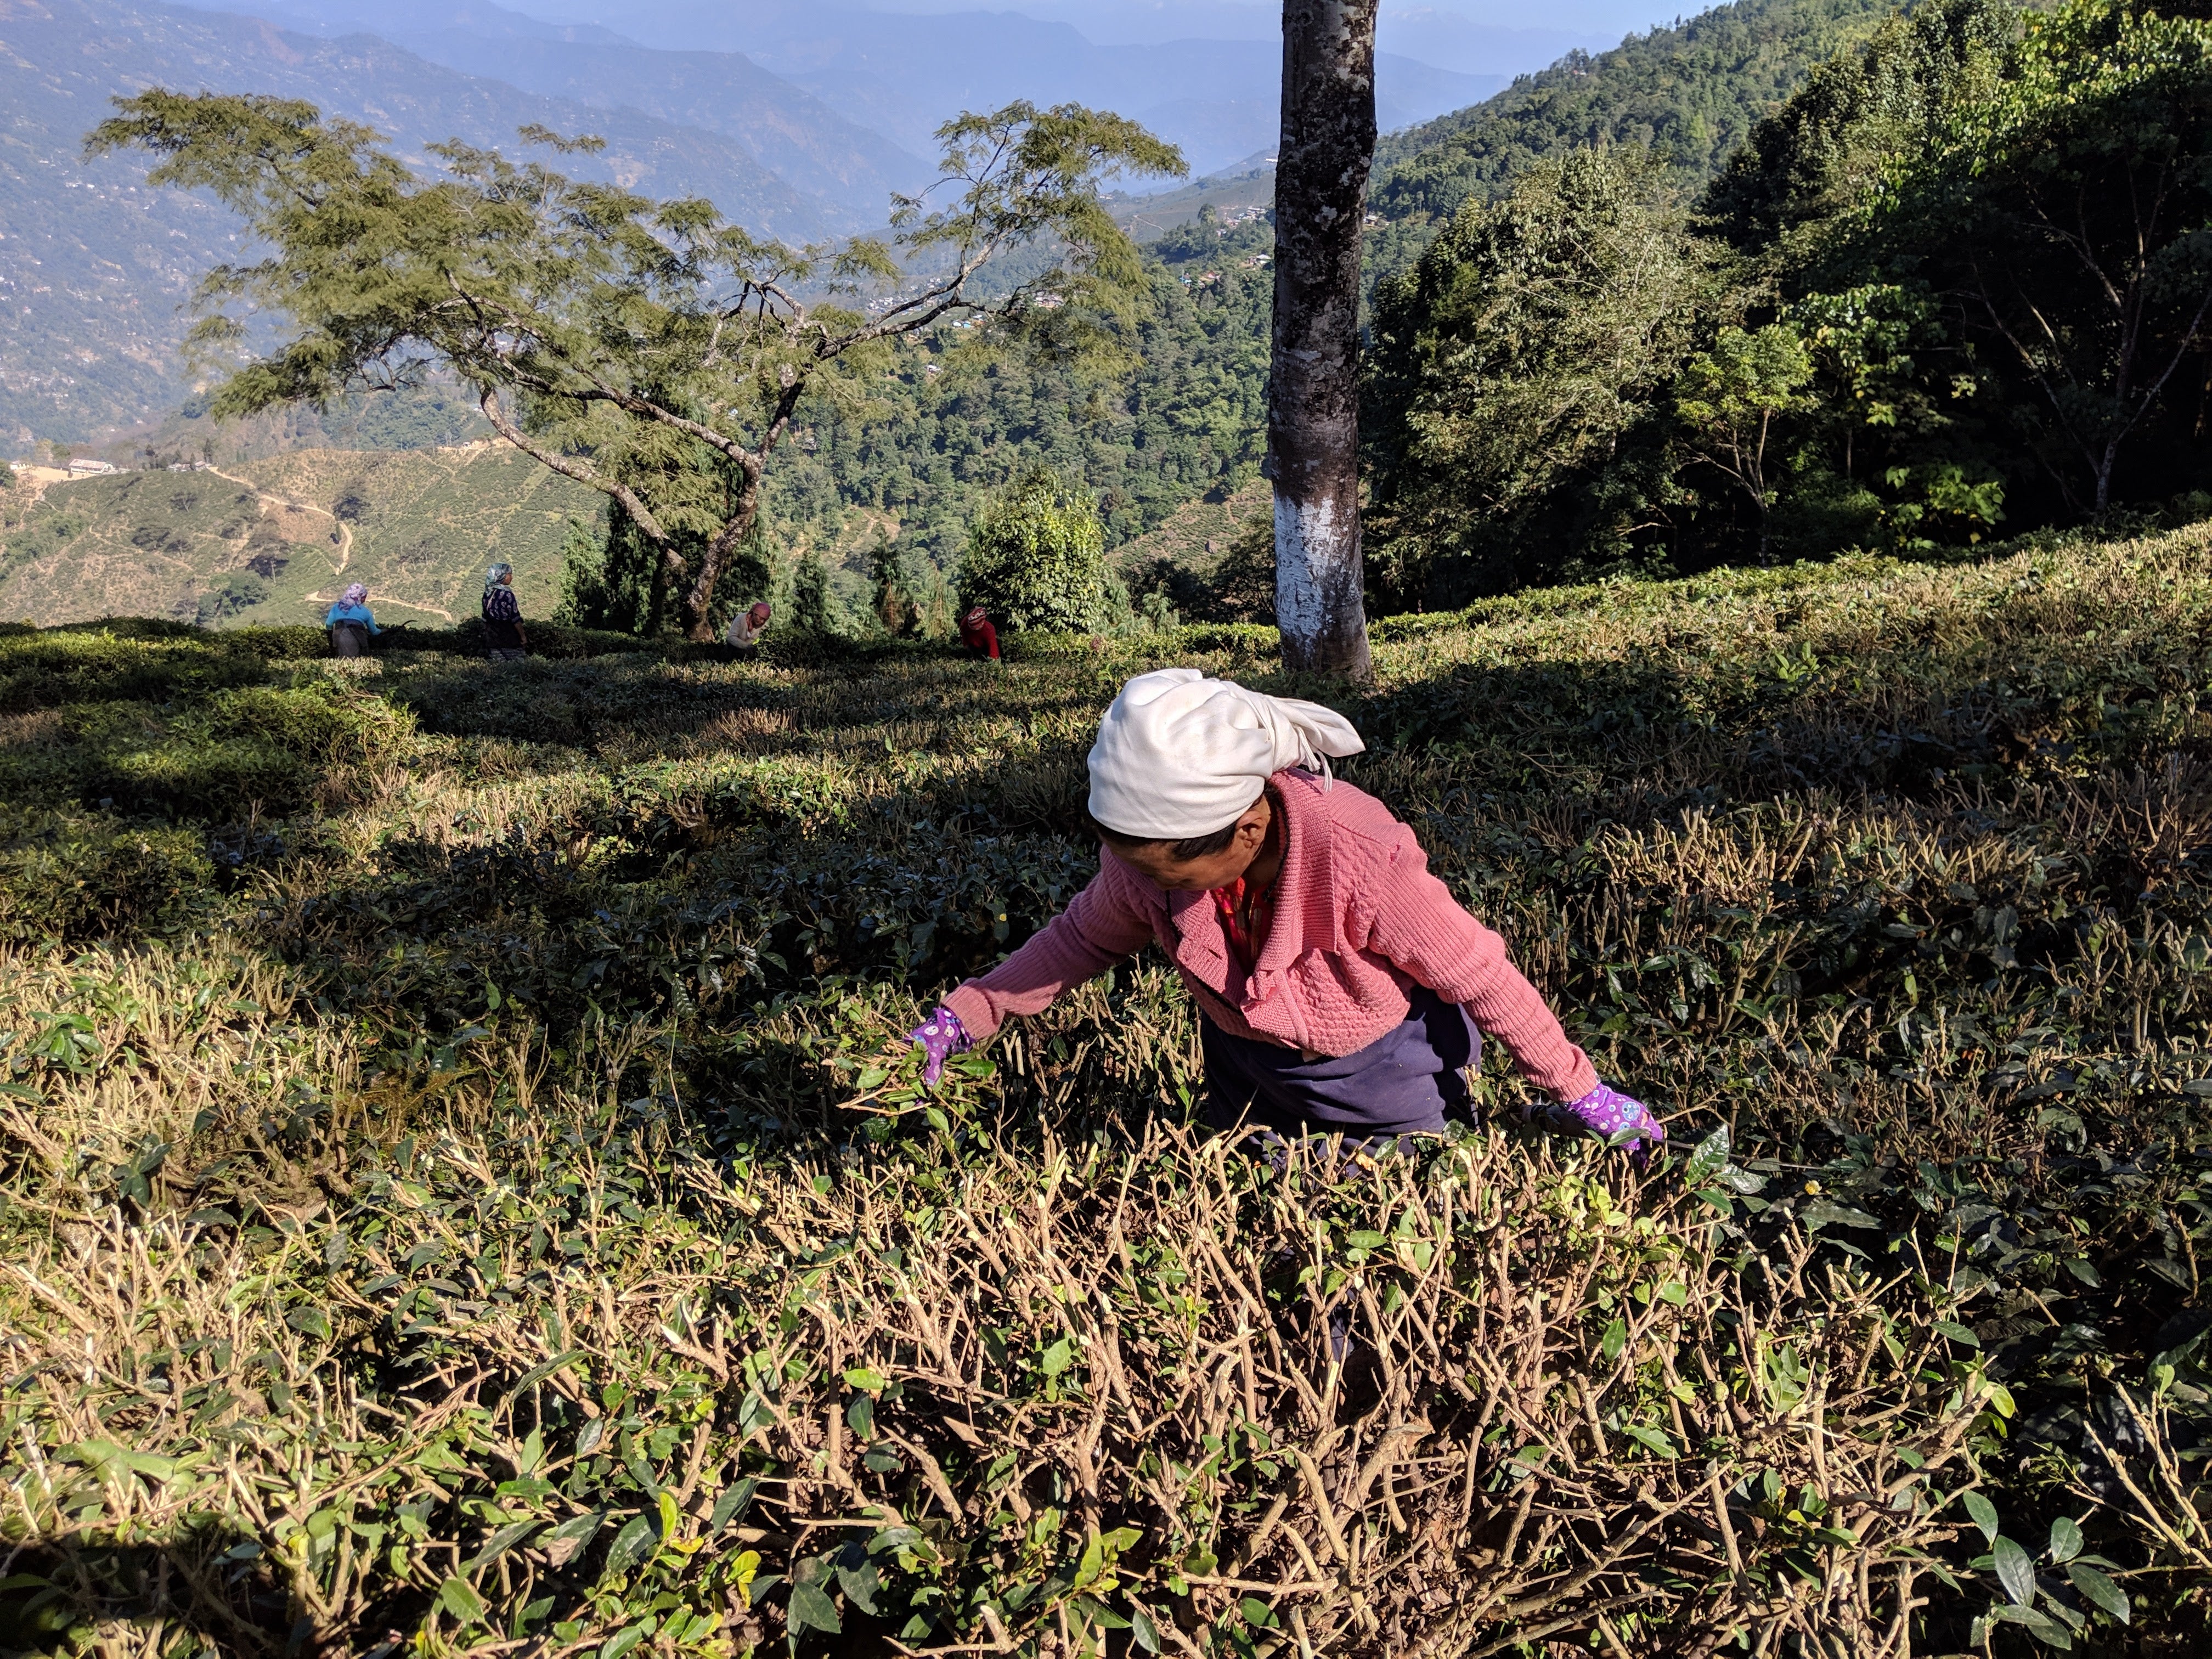 Tea worker in a darjeeling tea garden plucking tea leaves